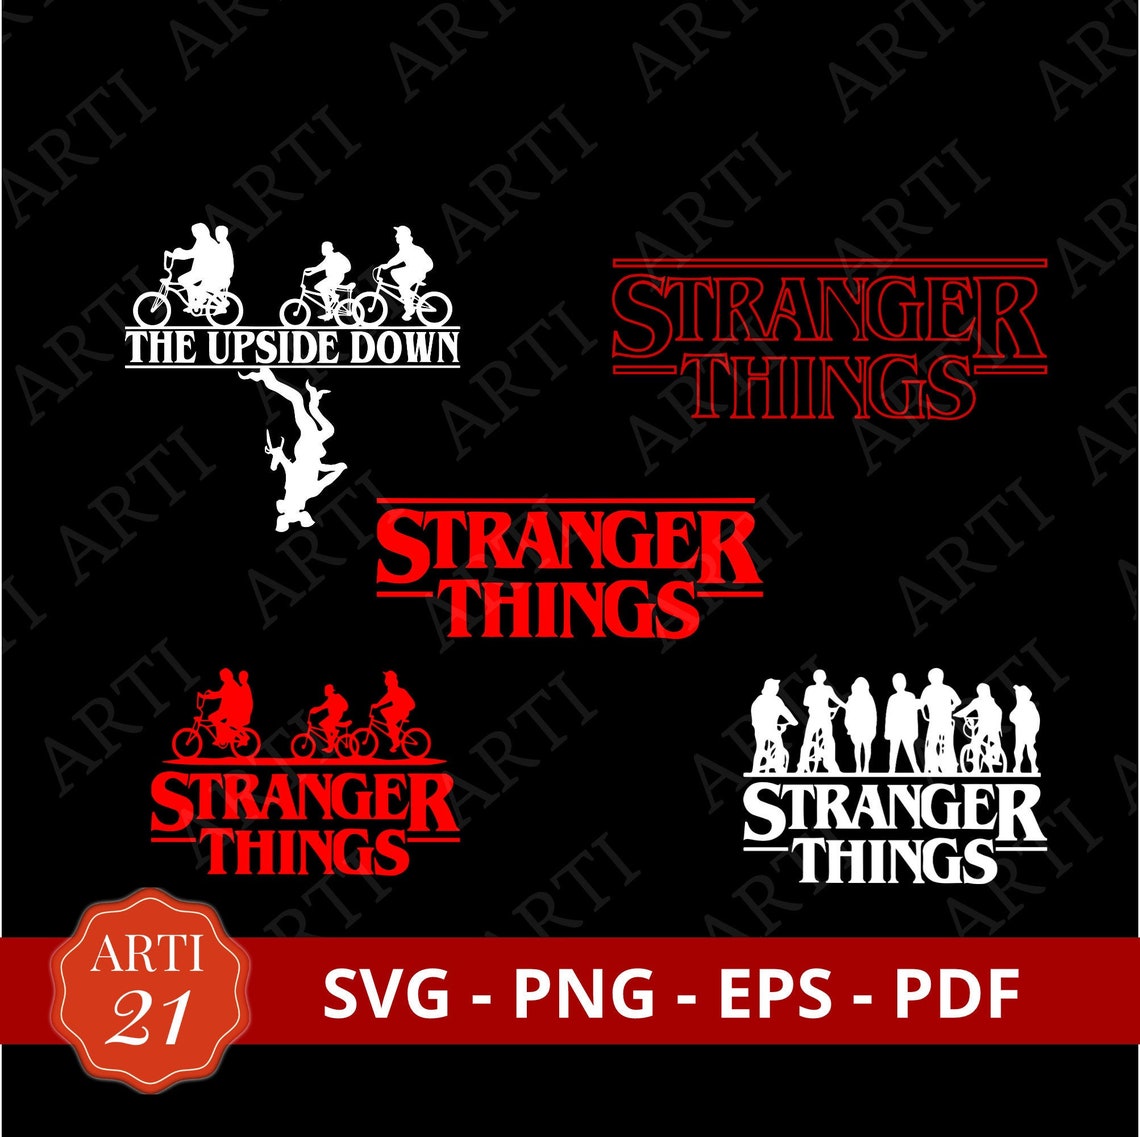 Stranger Things Logo Bundle 5 File / SVG / PNG / PDF / Eps / | Etsy